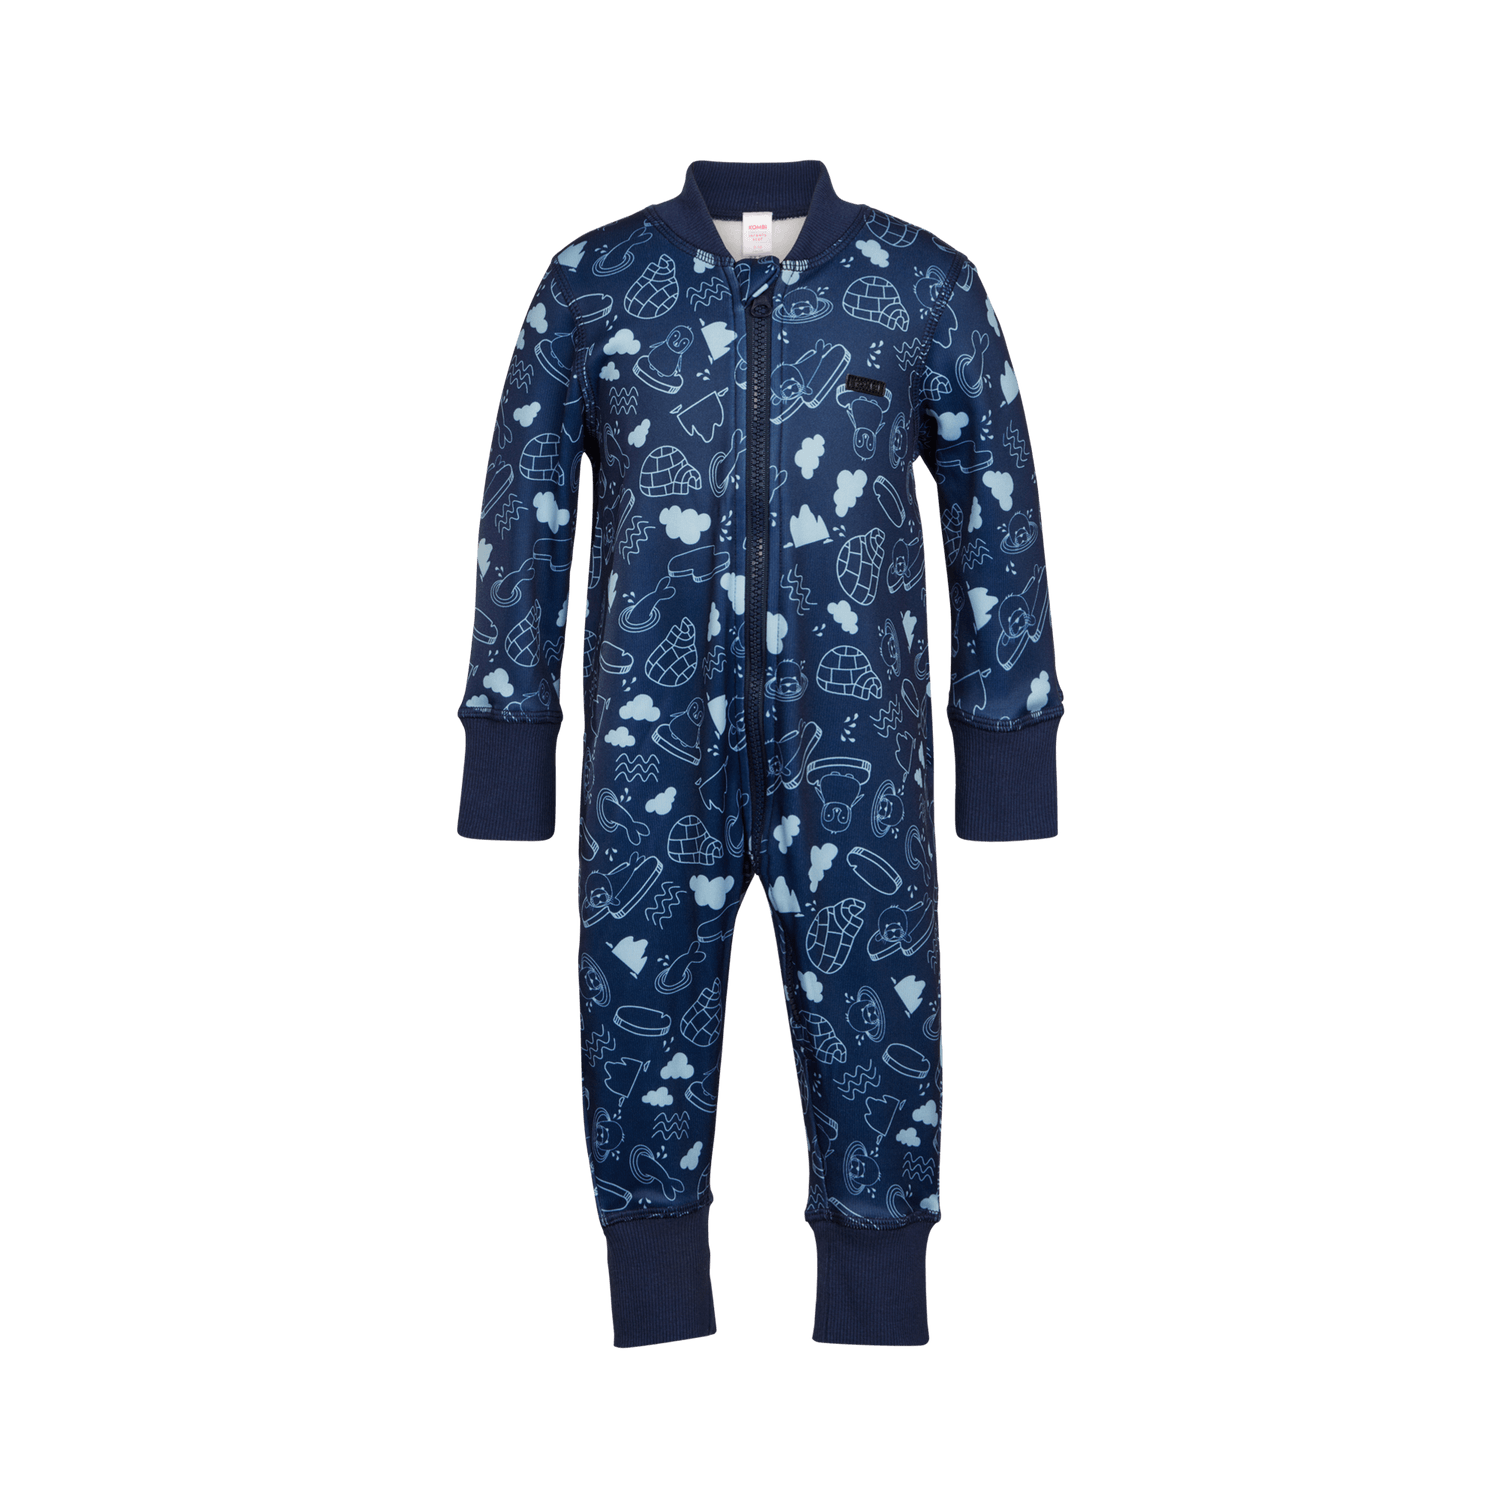 Kombi Infant Velvet Fleece One-Piece - Dark Navy Pack Ice - Front View - Cozy Baby Winterwear